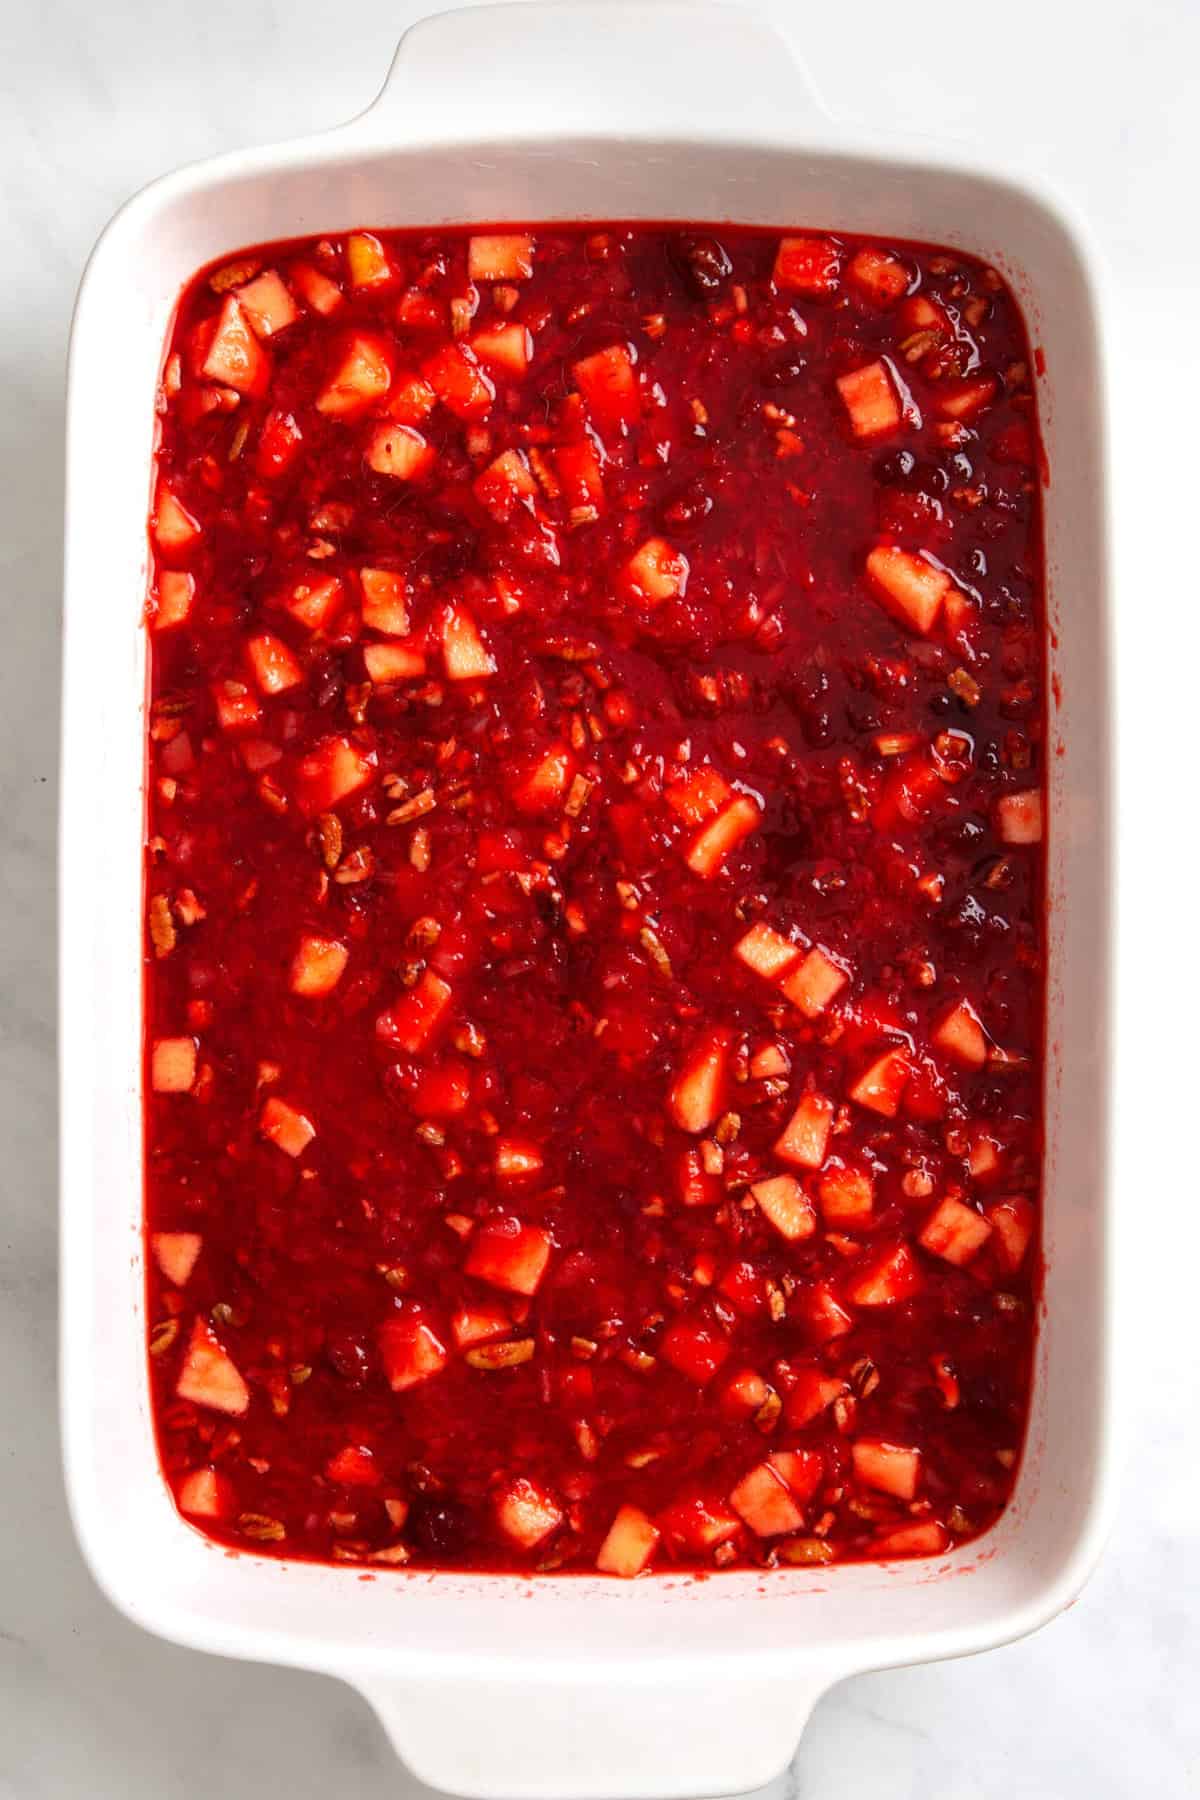 cranberry jello prepared in a 9x13 casserole dish. 